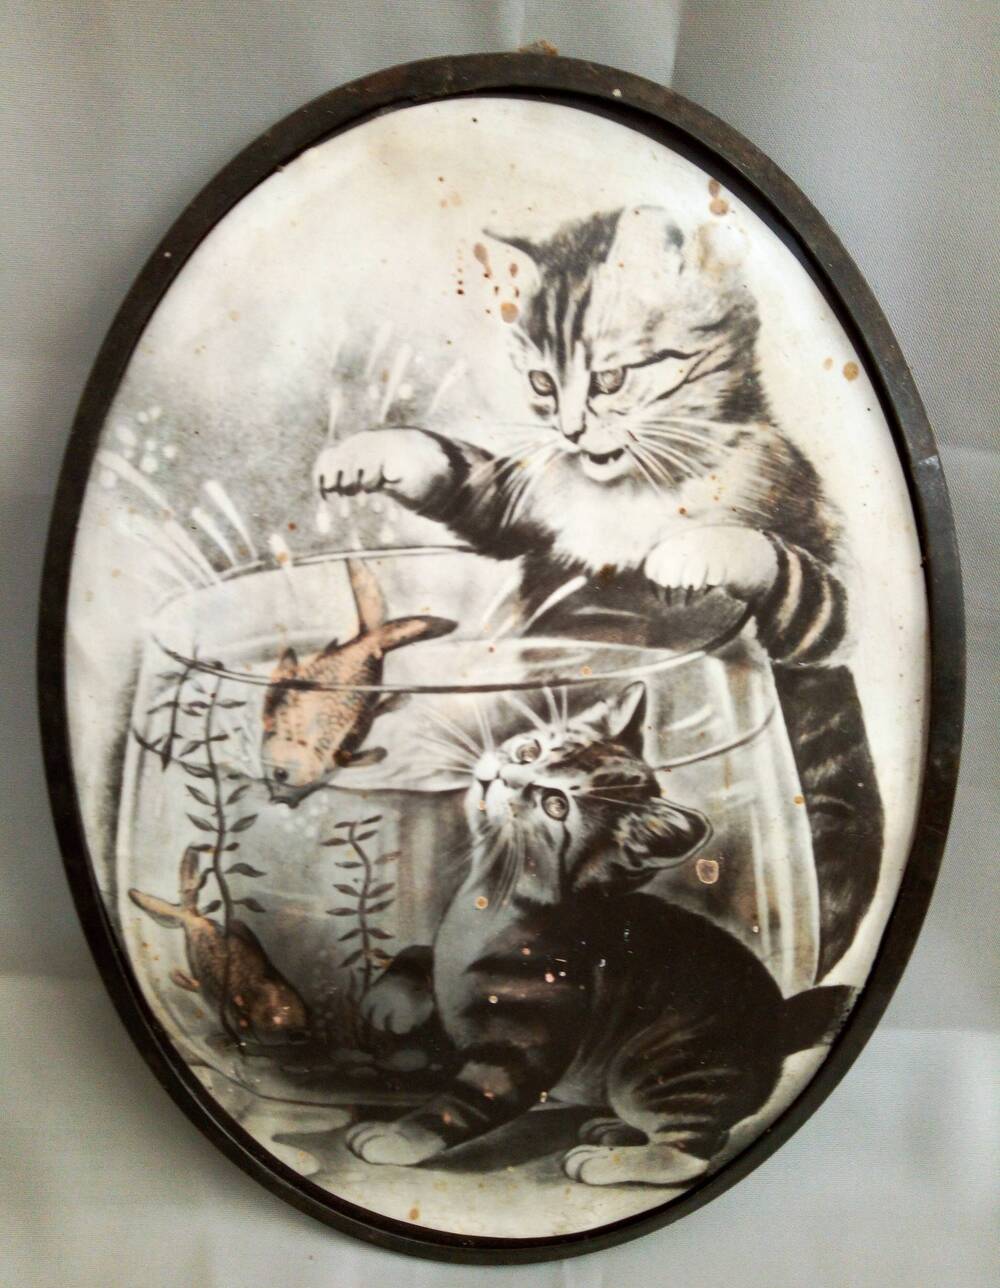 Фотографическая открытка «Два котенка у аквариума». Сувенирная фабрика. СССР, 1950-е гг.